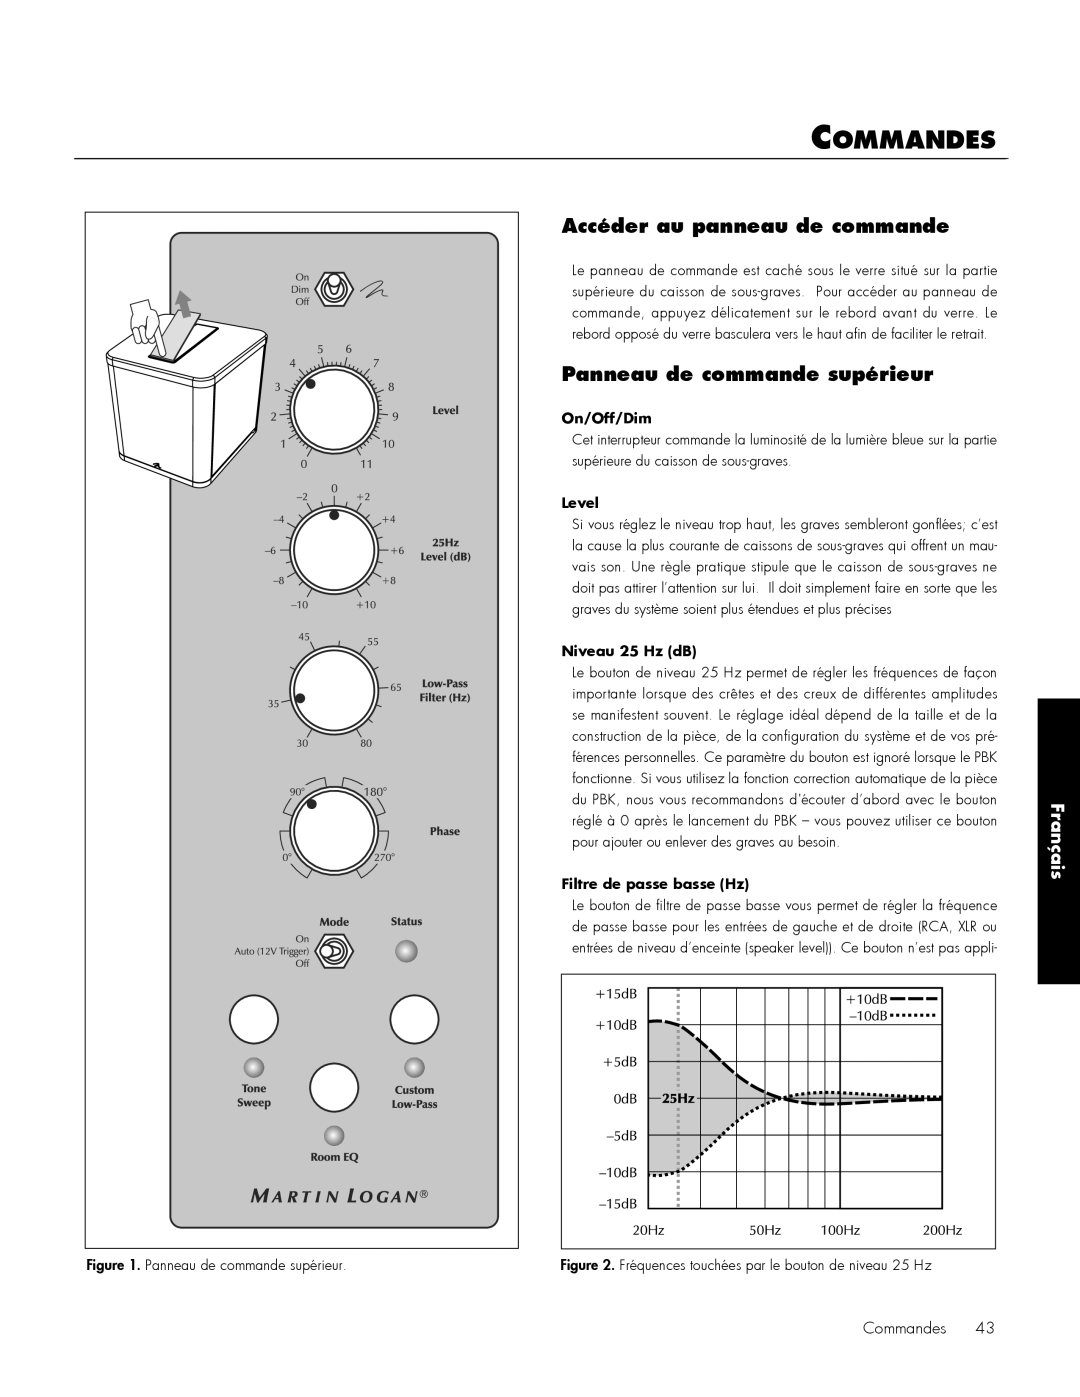 MartinLogan 212, 210 user manual Commandes, Français, On/Off/Dim, Level, Niveau 25 Hz dB, Filtre de passe basse Hz 